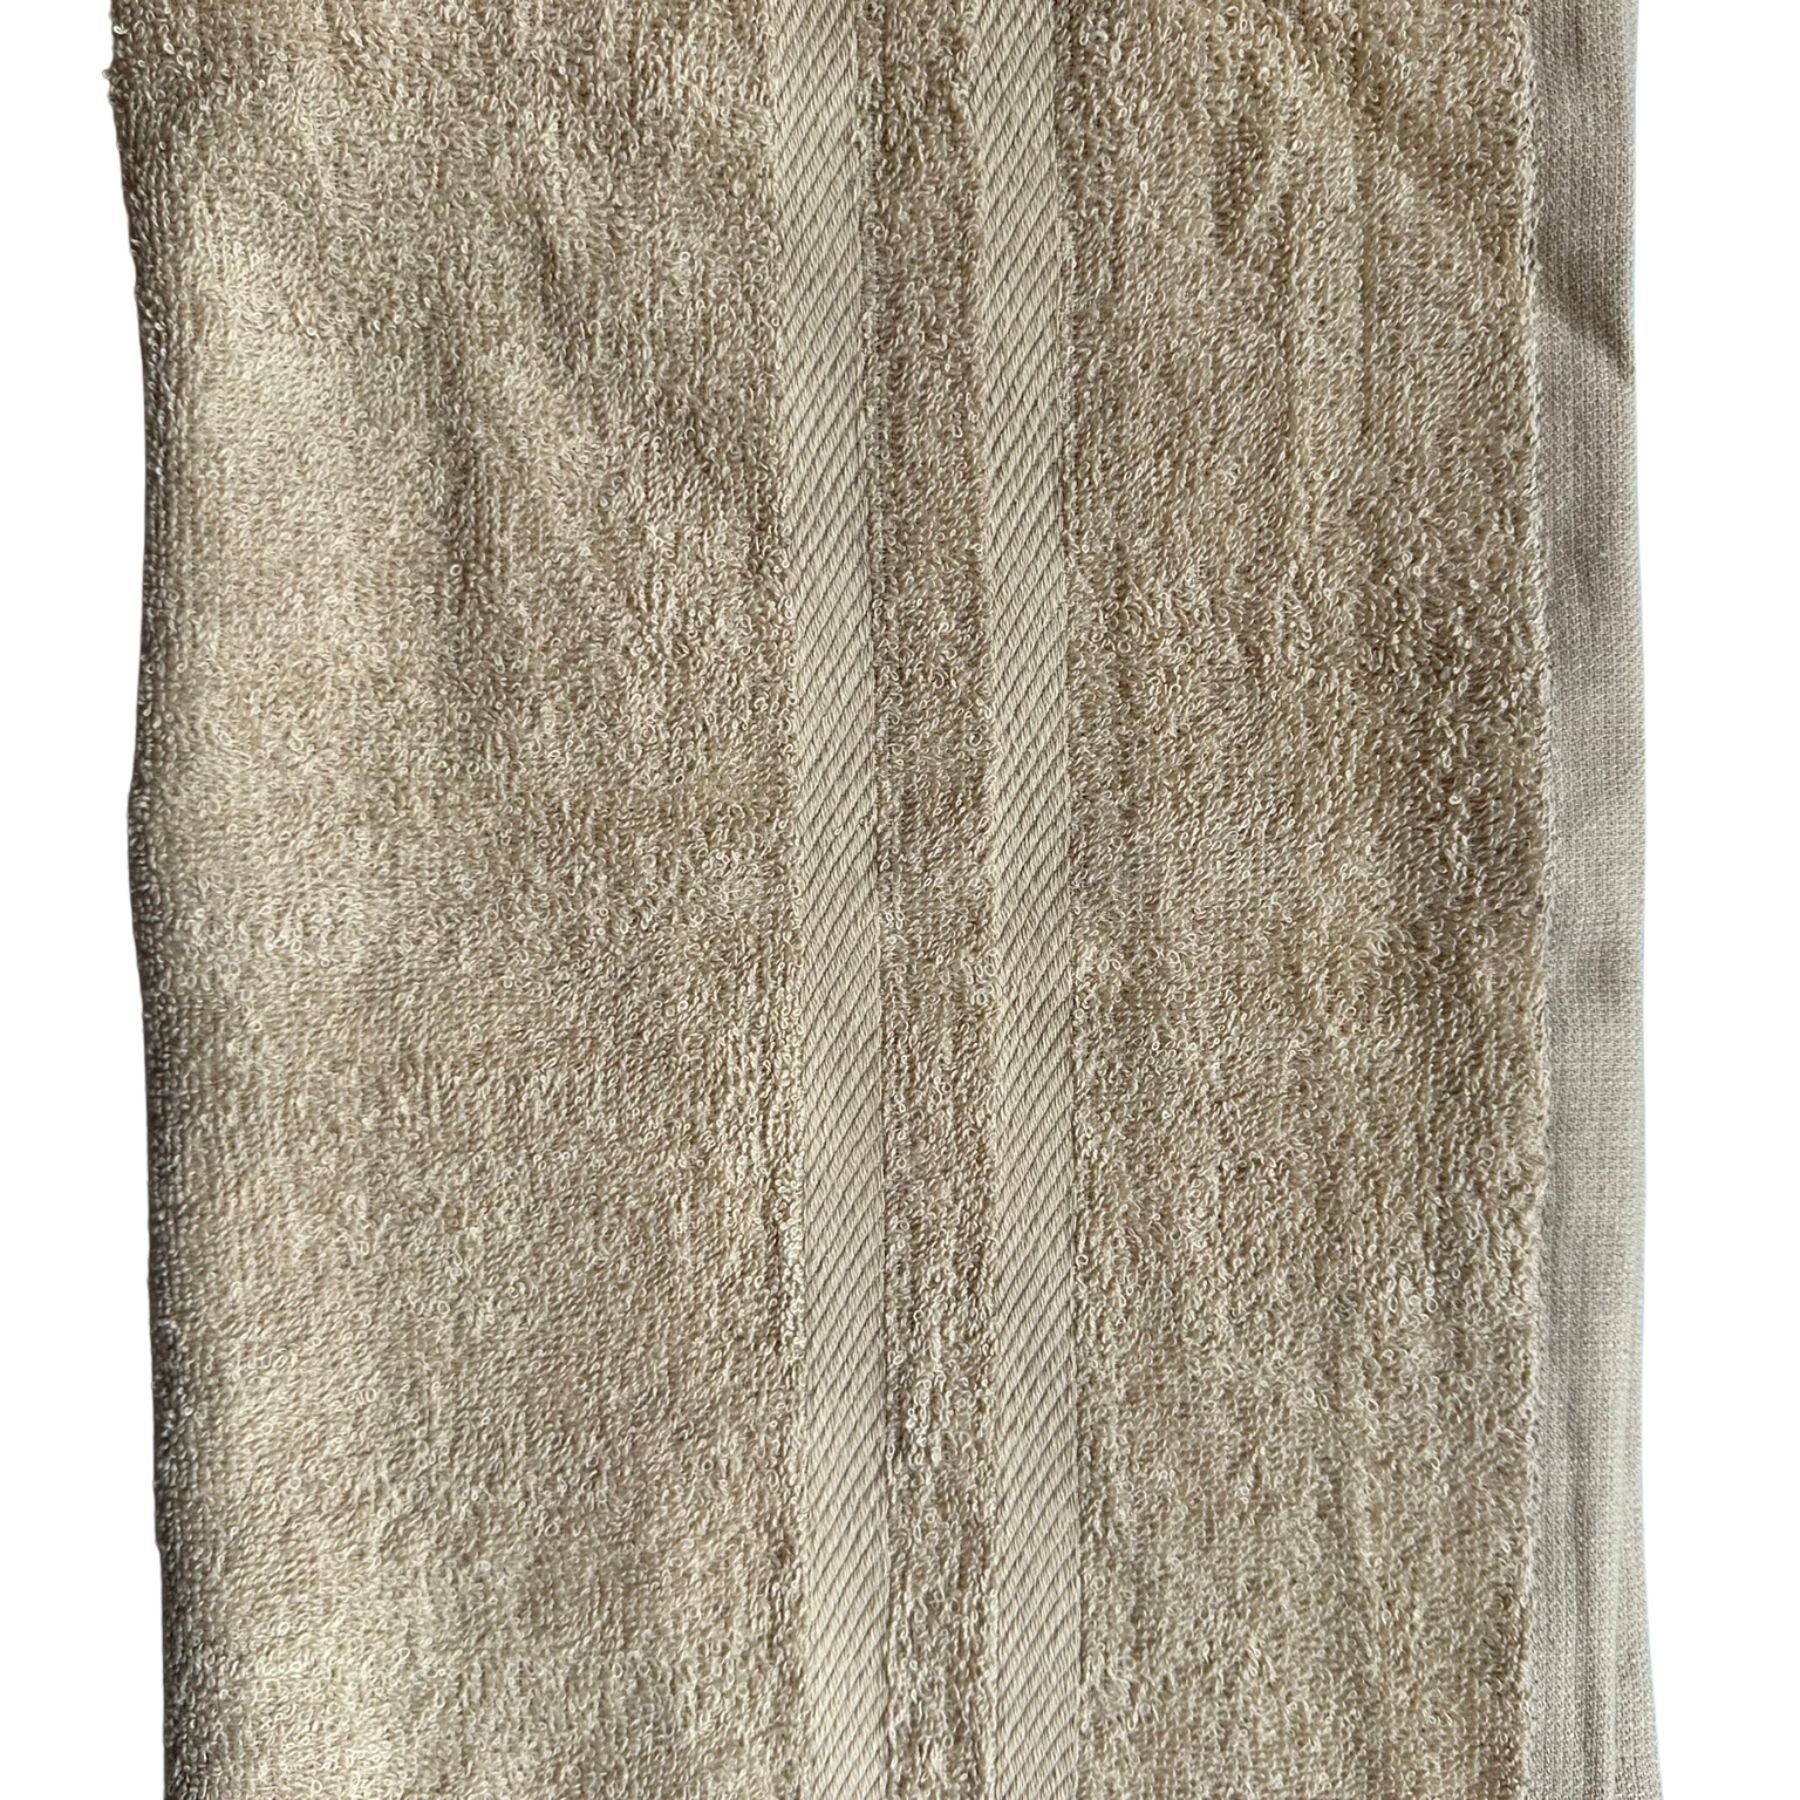 Ein Duschtücher 100%Baumwolle 450g/m², Duschtuchset FSH 1005 baumwolle Taupe (2-St), verschiedene Baumwolle Farben 2 Duschtuch 70x140cm aus